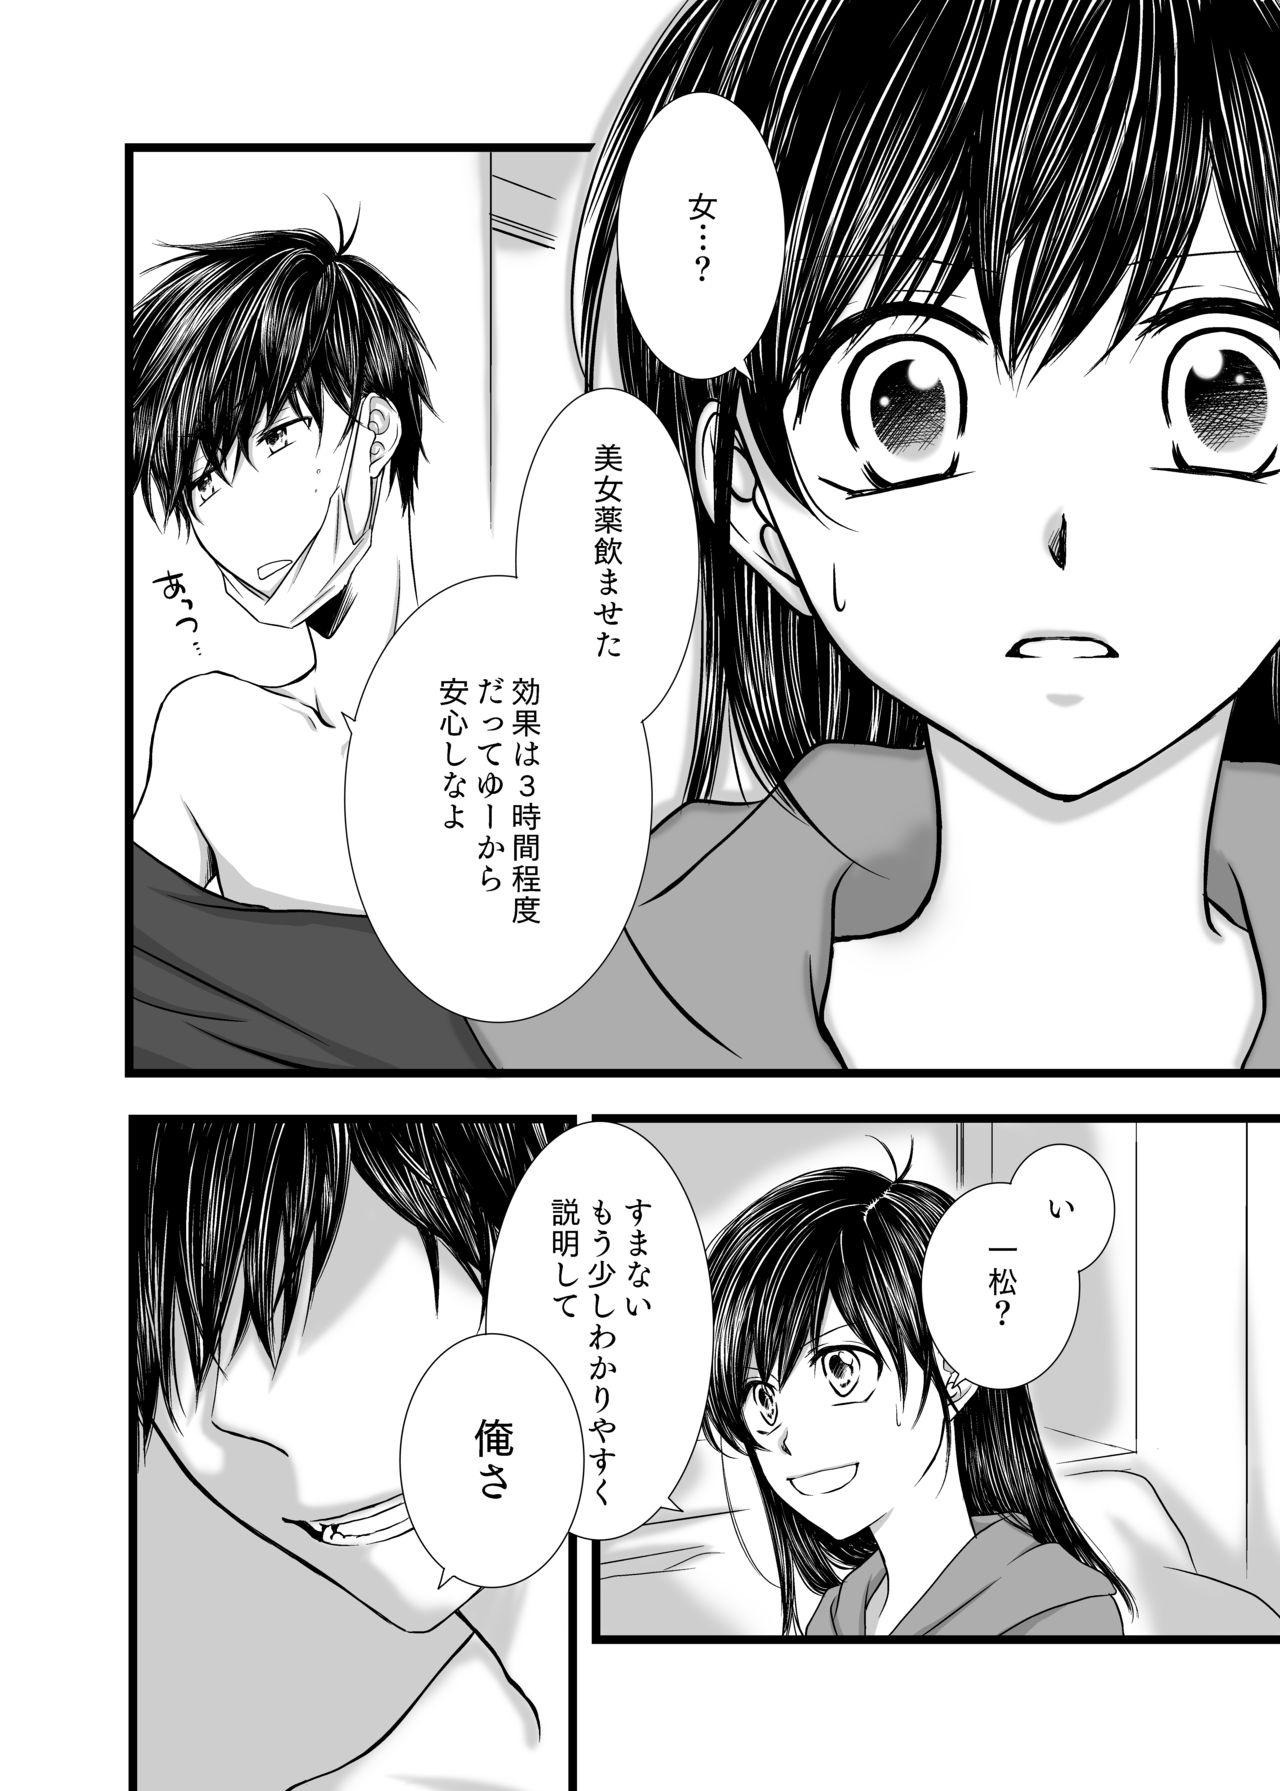 Gay Blowjob 愛のカタチは。 - Osomatsu san Nudes - Page 7